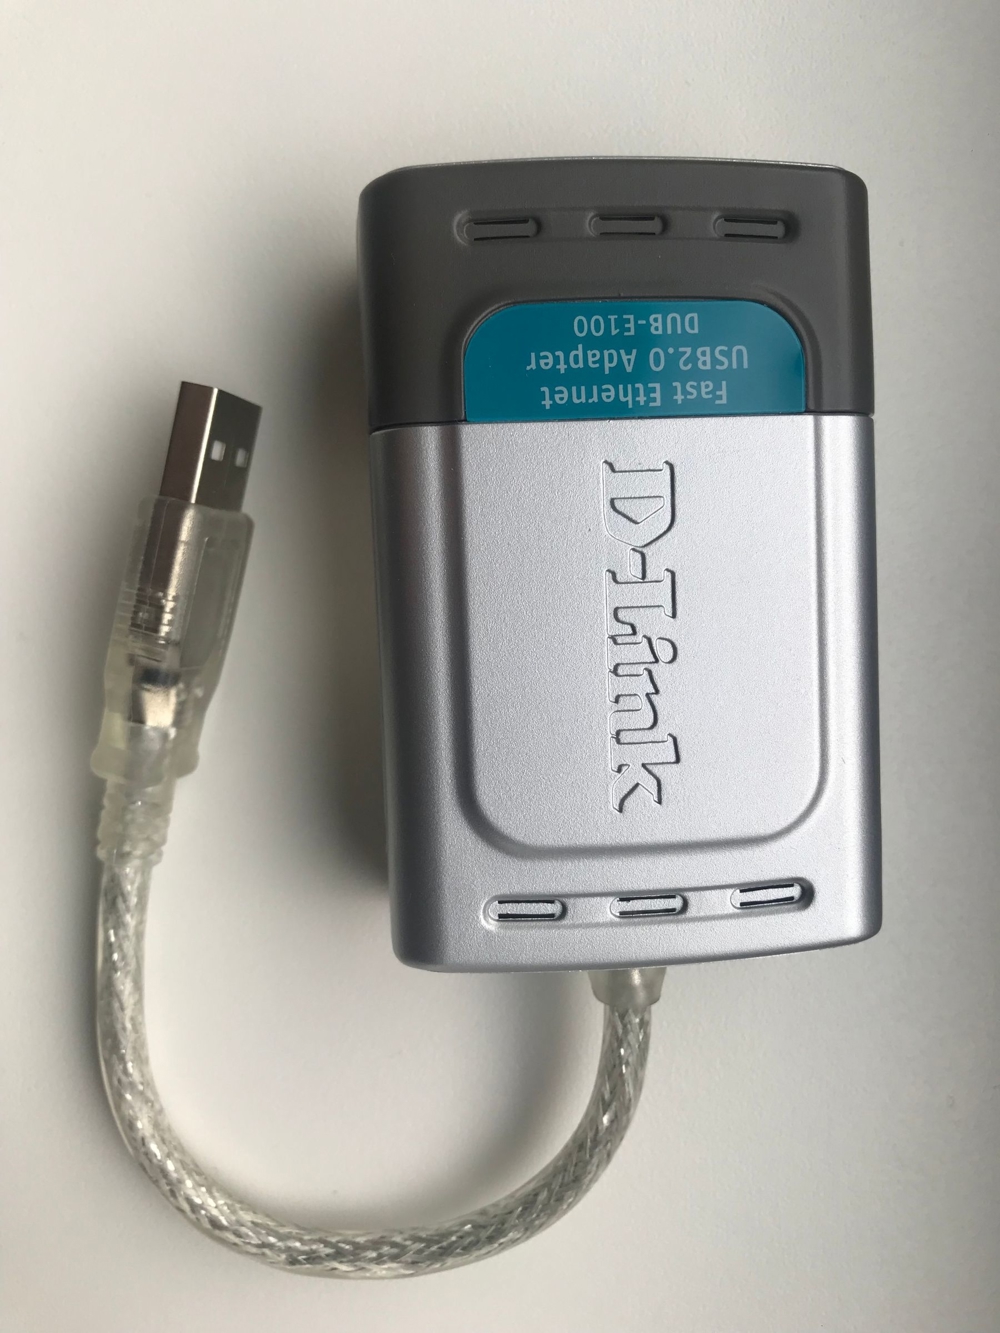 D-Link Hi-Speed USB 2.0 Fast Ethernet Adapter